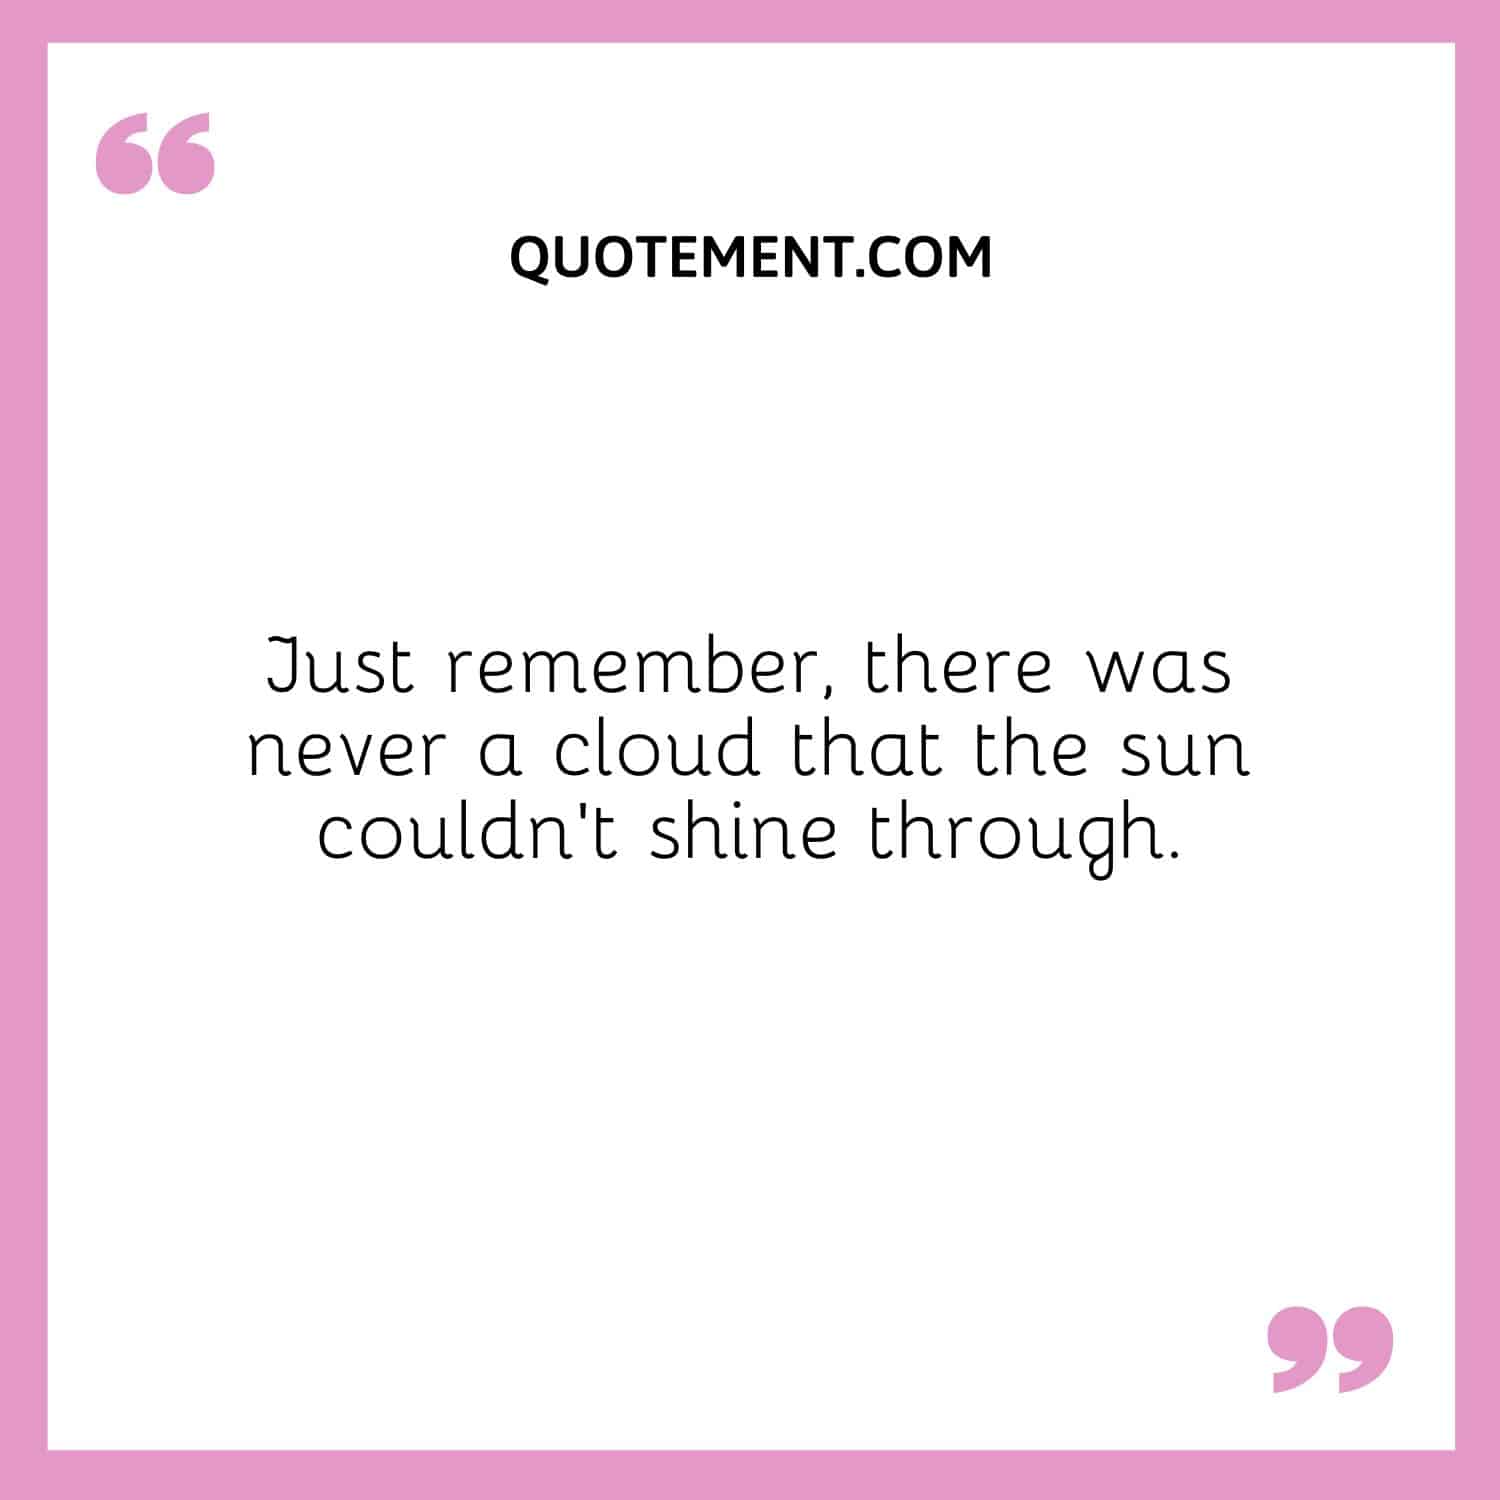 Recuerda que nunca hubo una nube que el sol no pudiera atravesar.